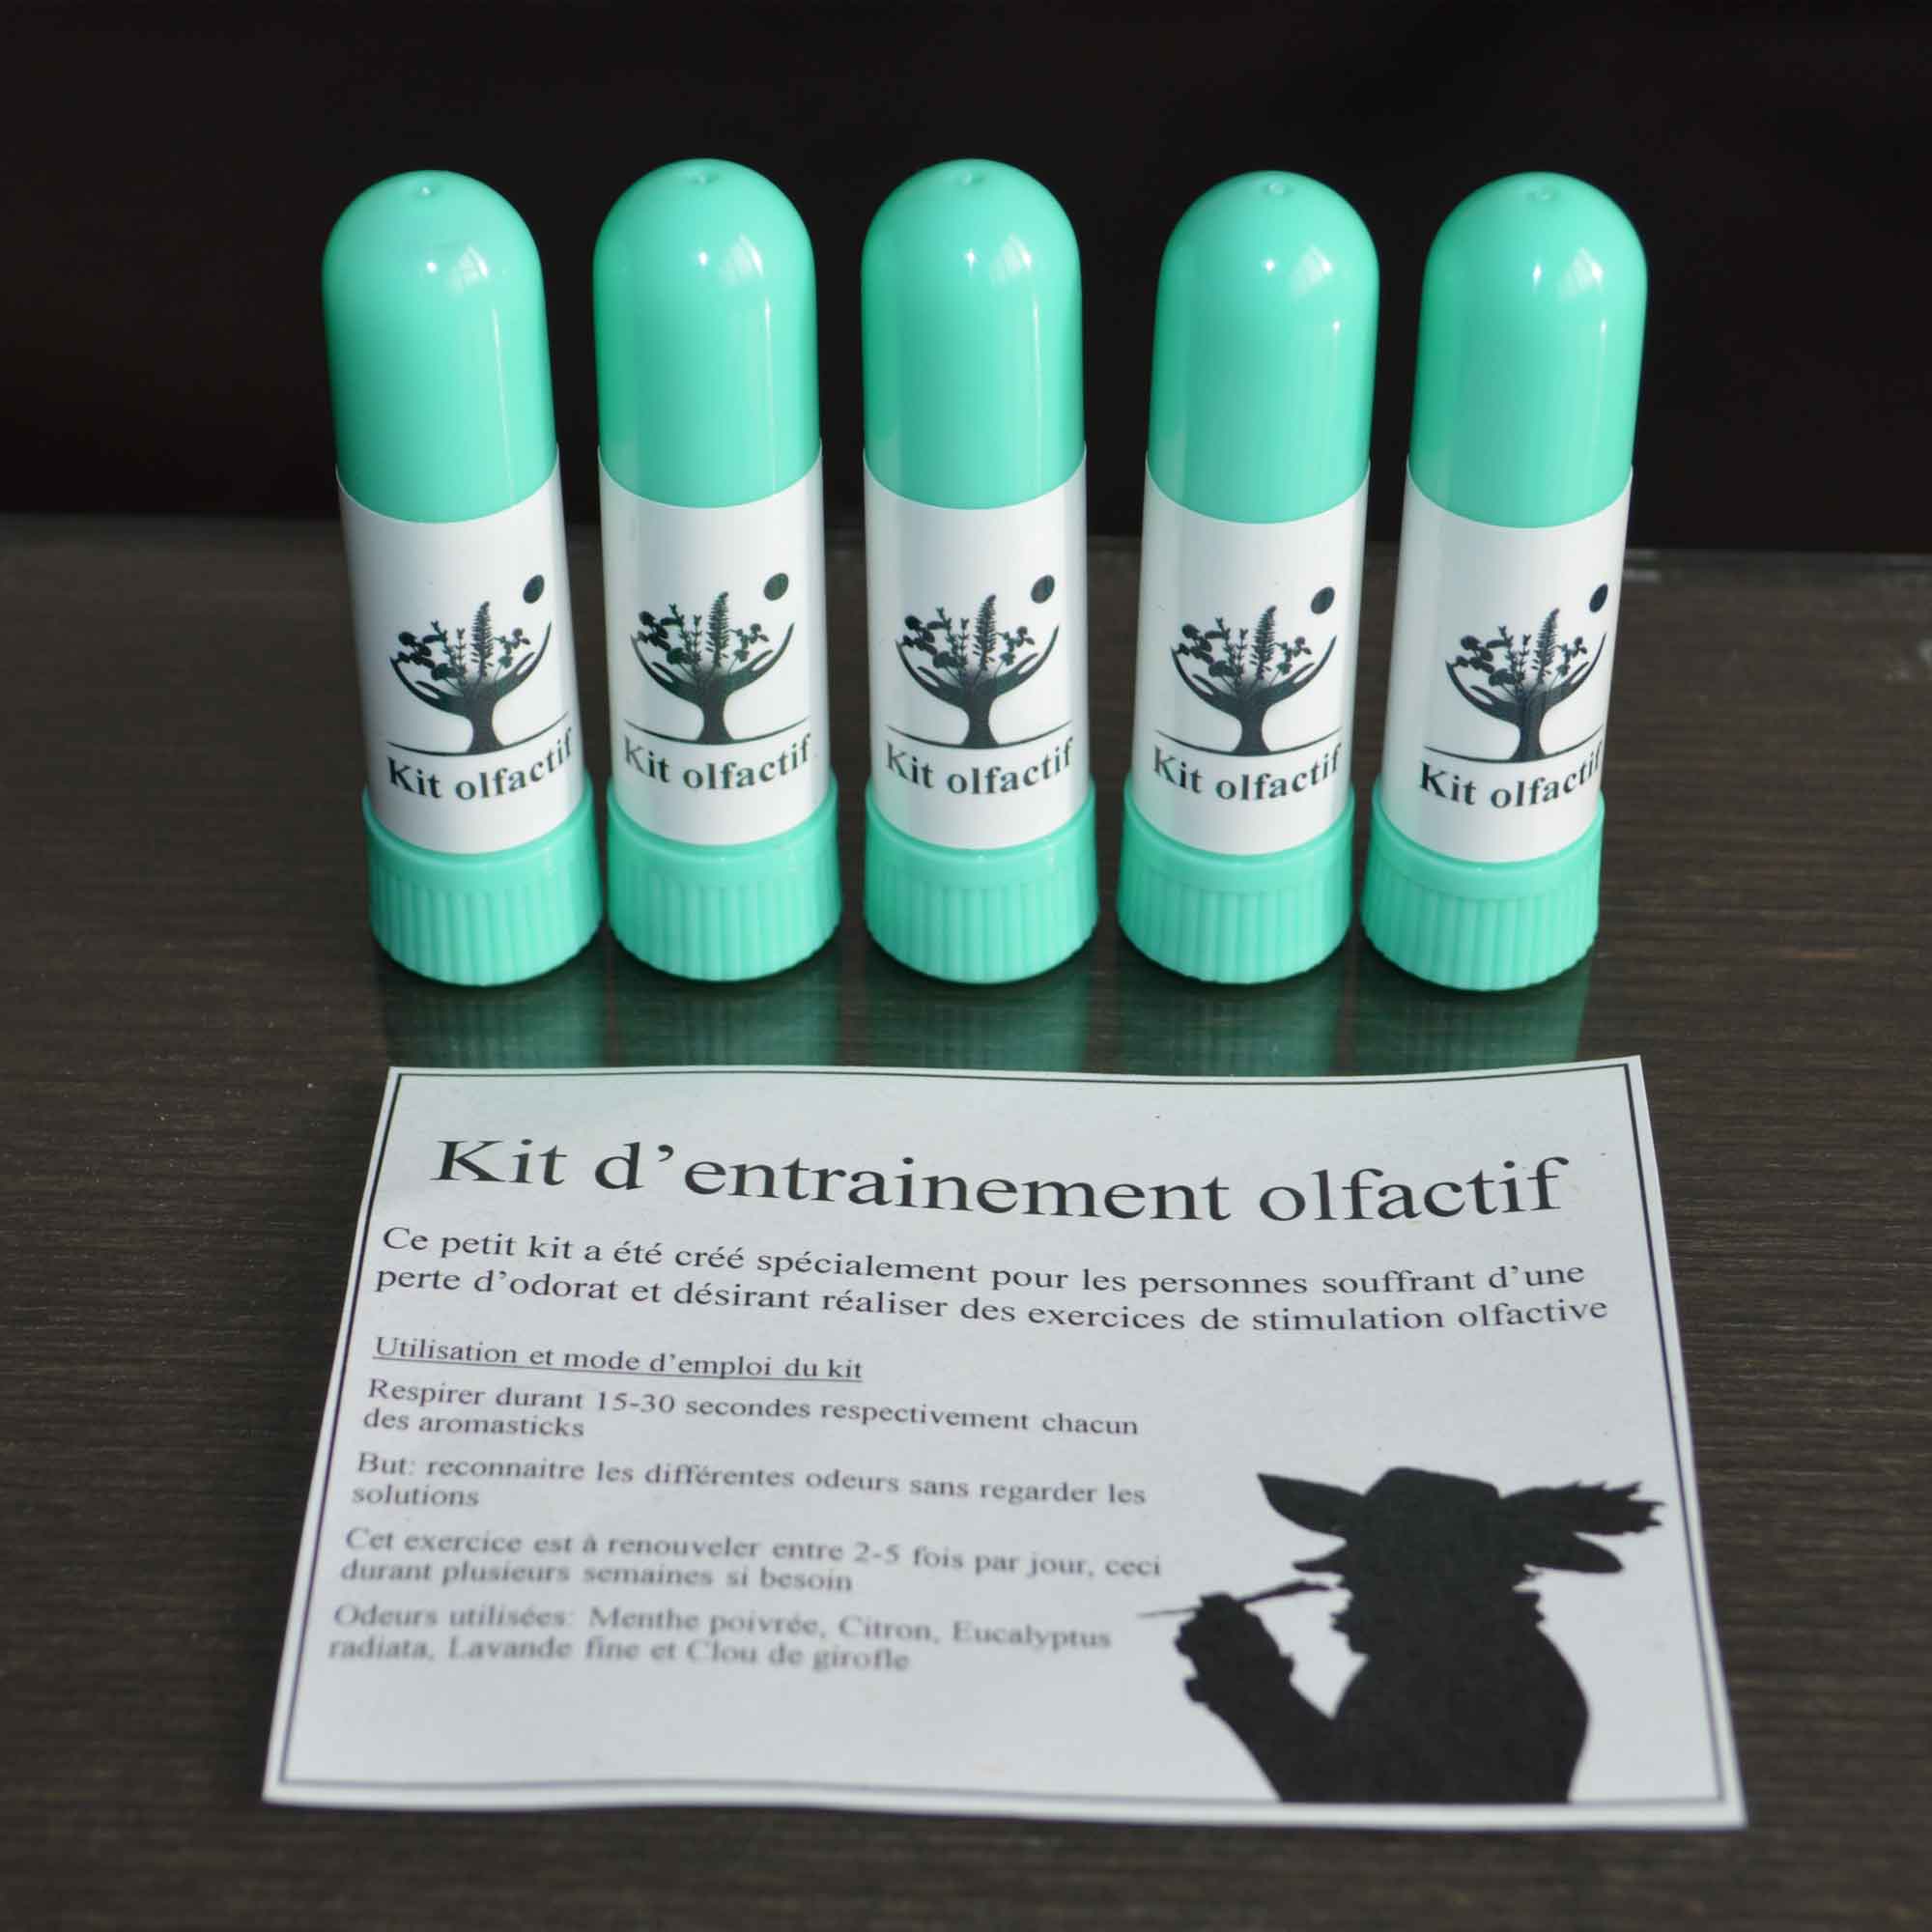 Kit d'entrainement olfactif